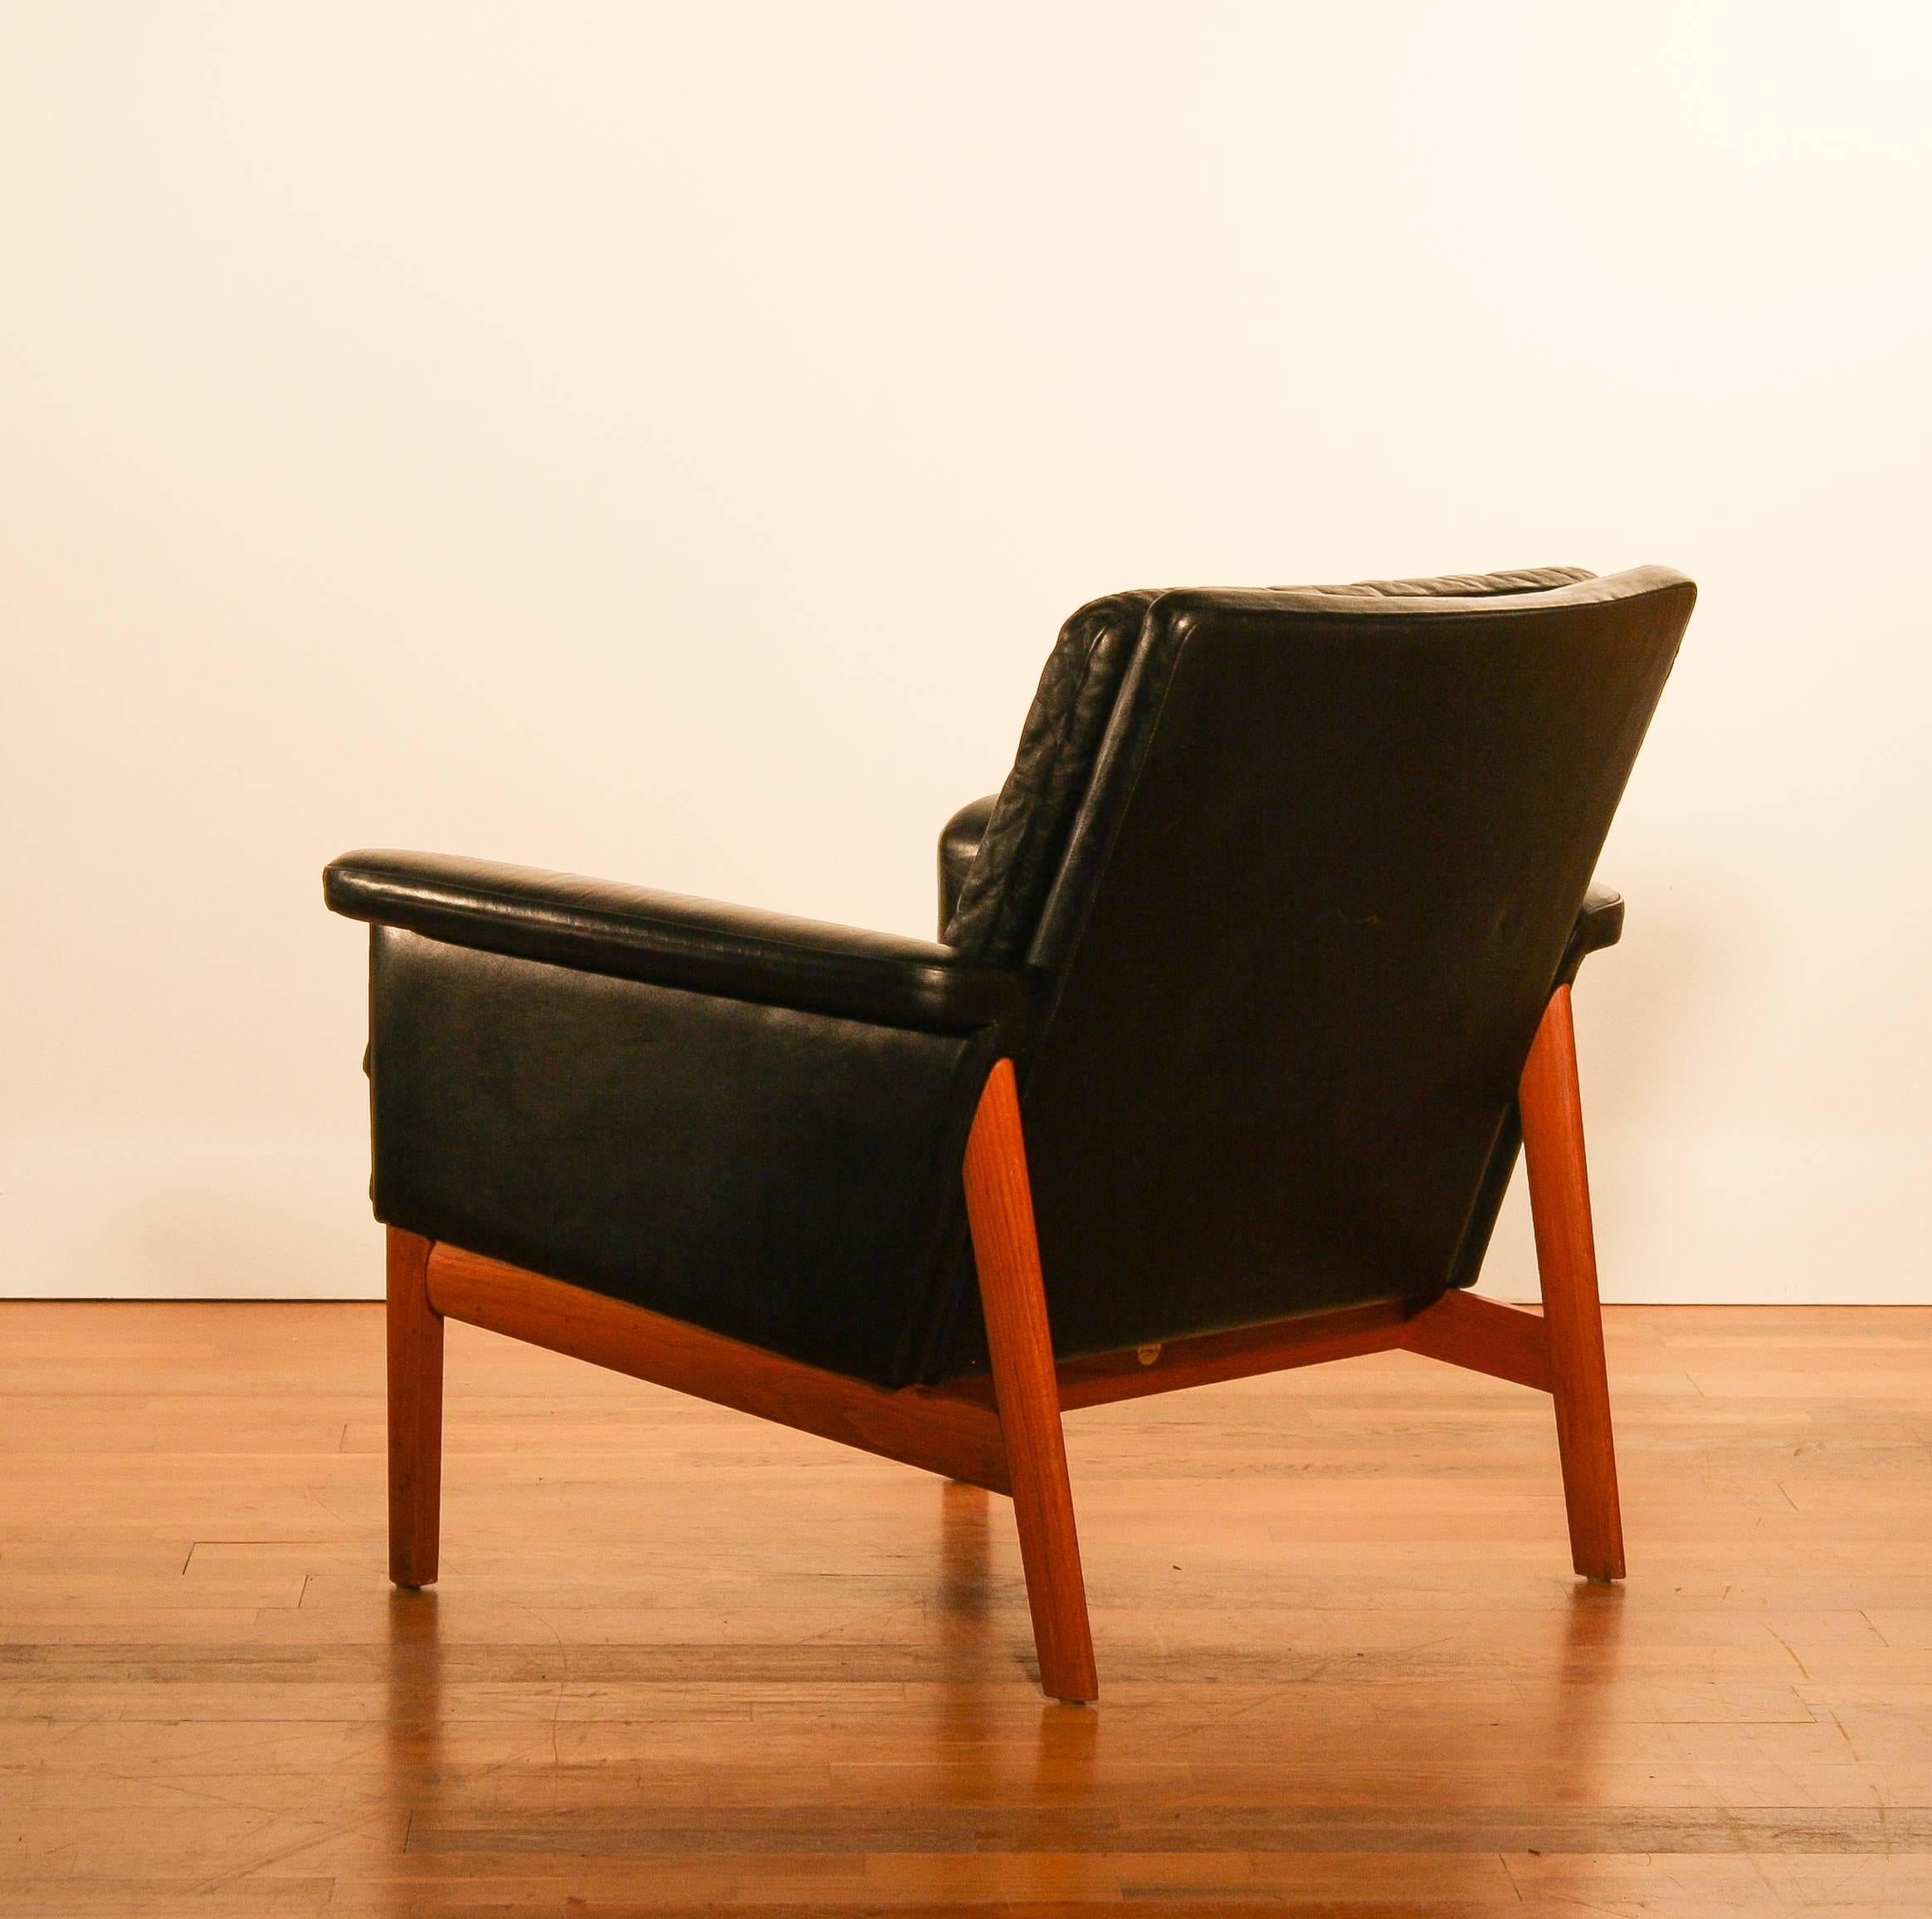 Teak 1950s, Lounge Chair 'Jupiter' by Finn Juhl for France & Son, Black Leather